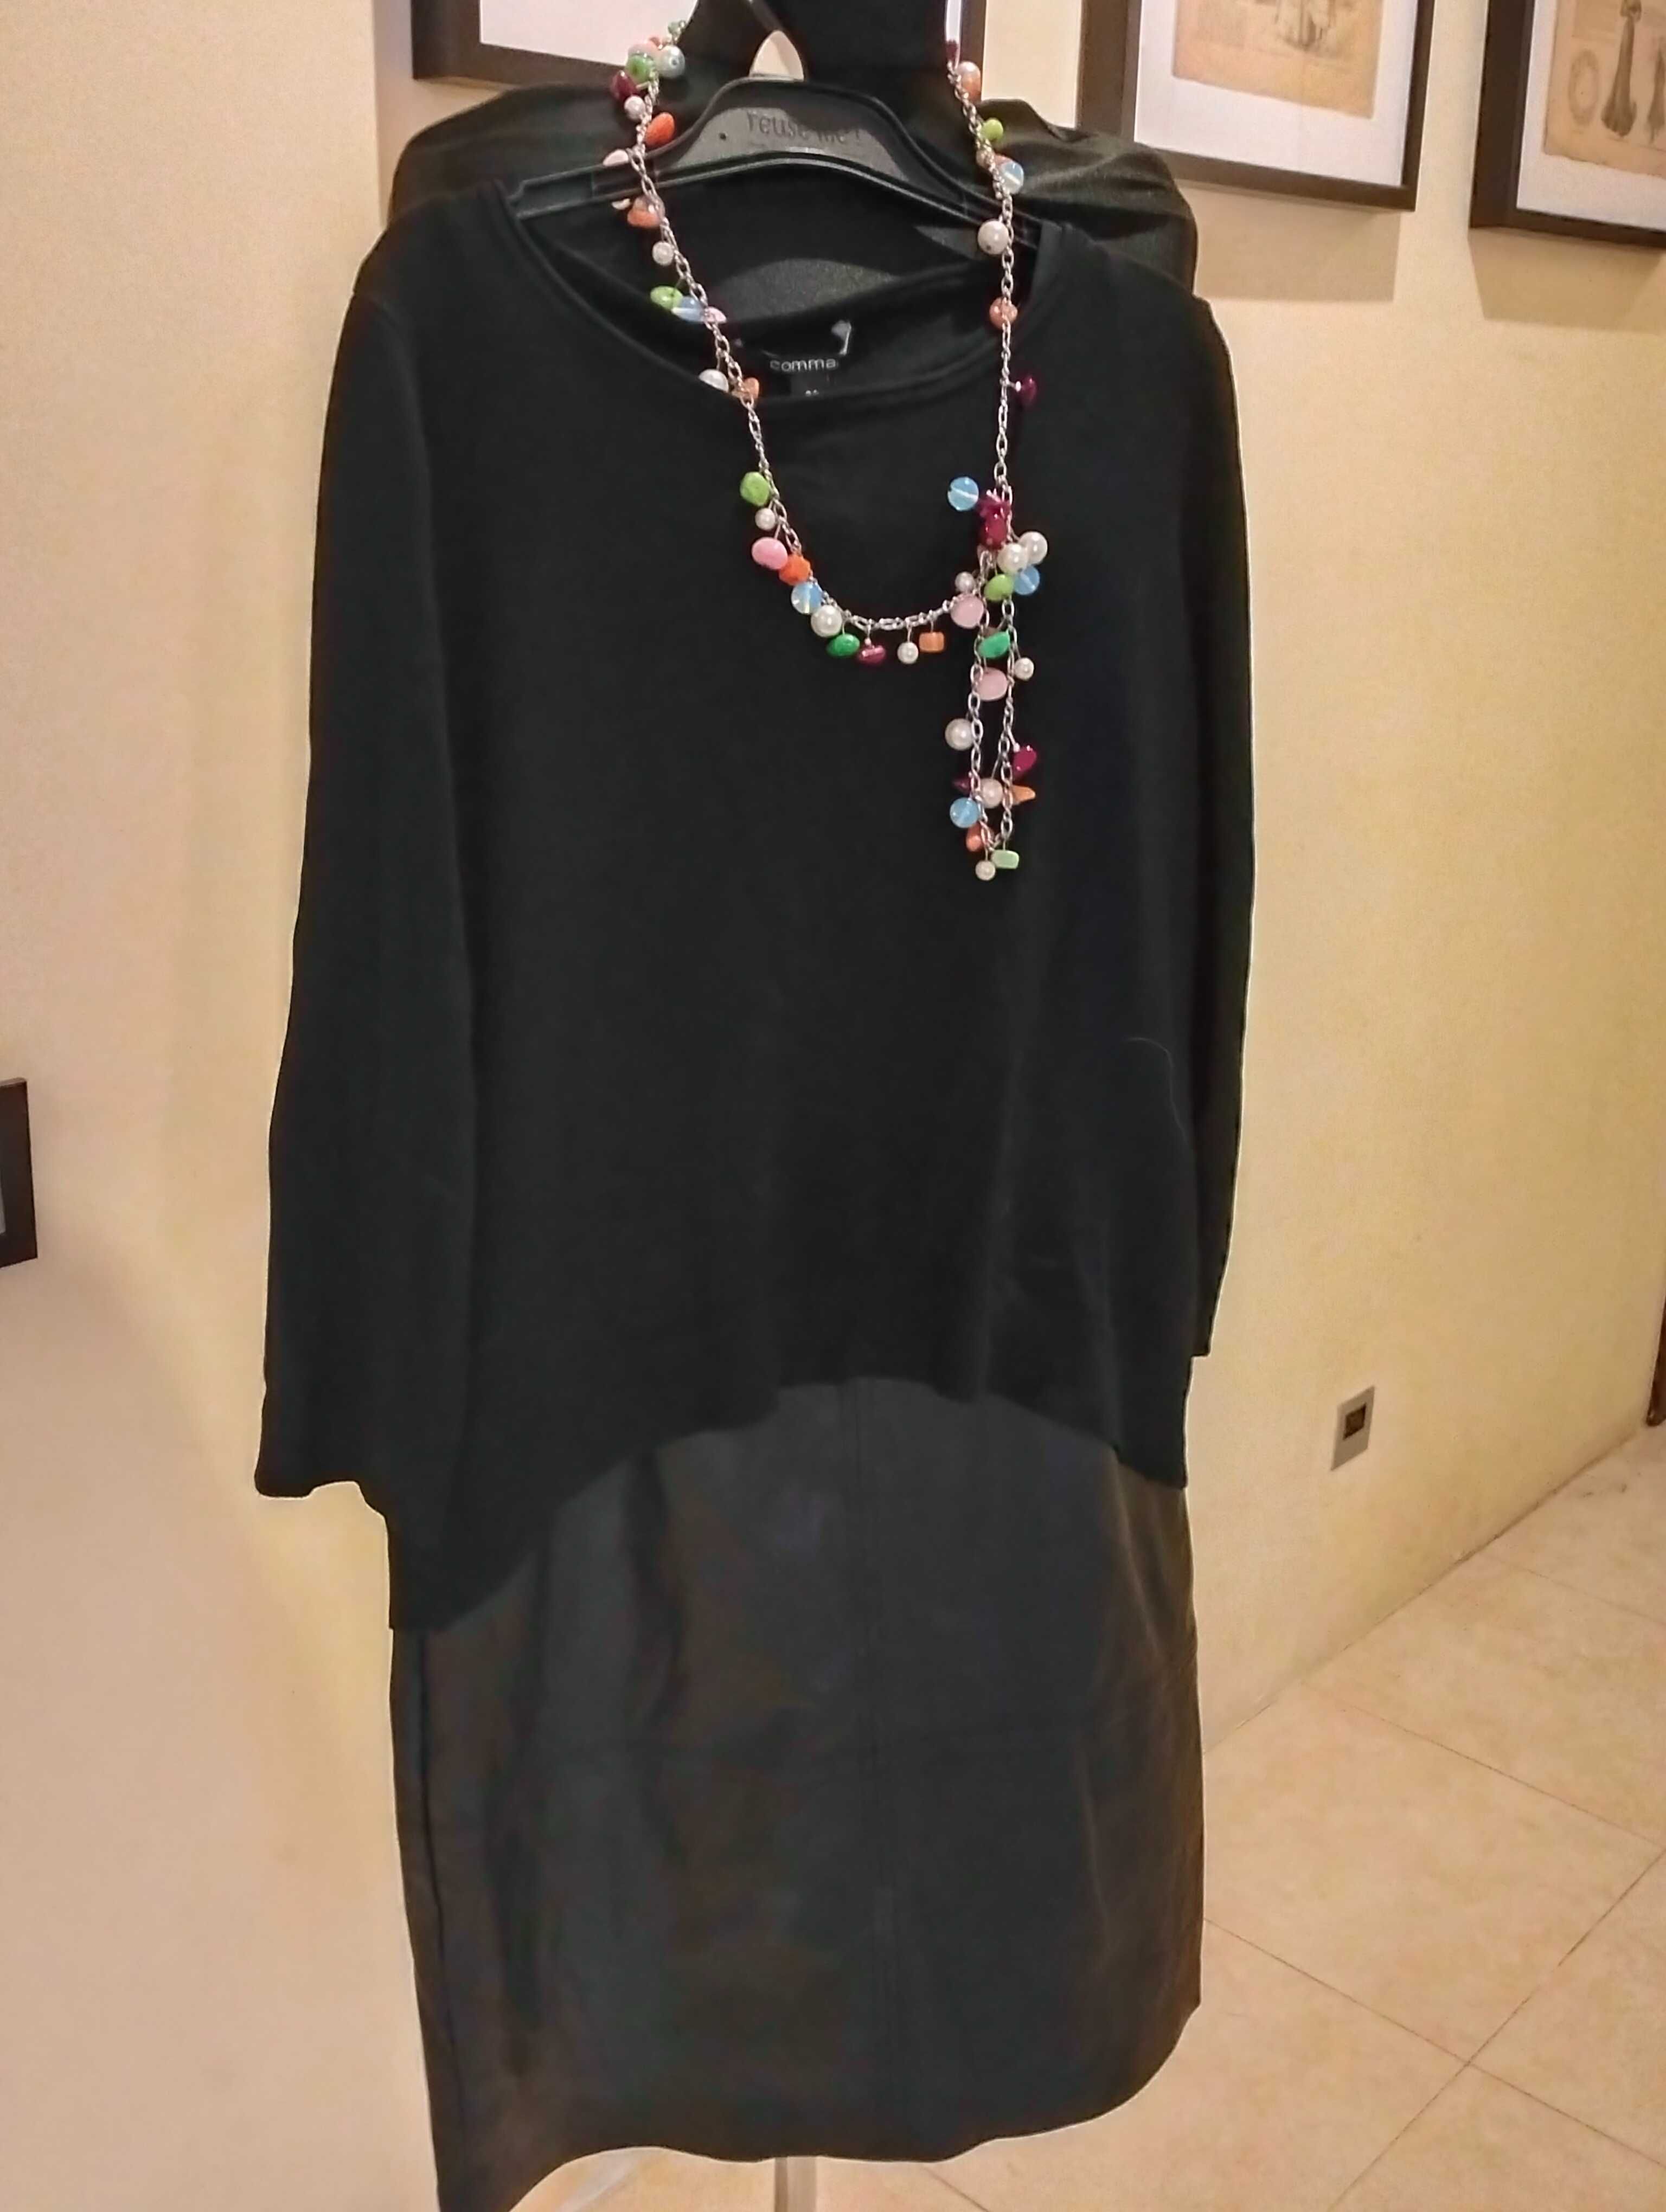 NOWA czarna sukienka z ekoskórą firmy Comma rozmiar 34/36